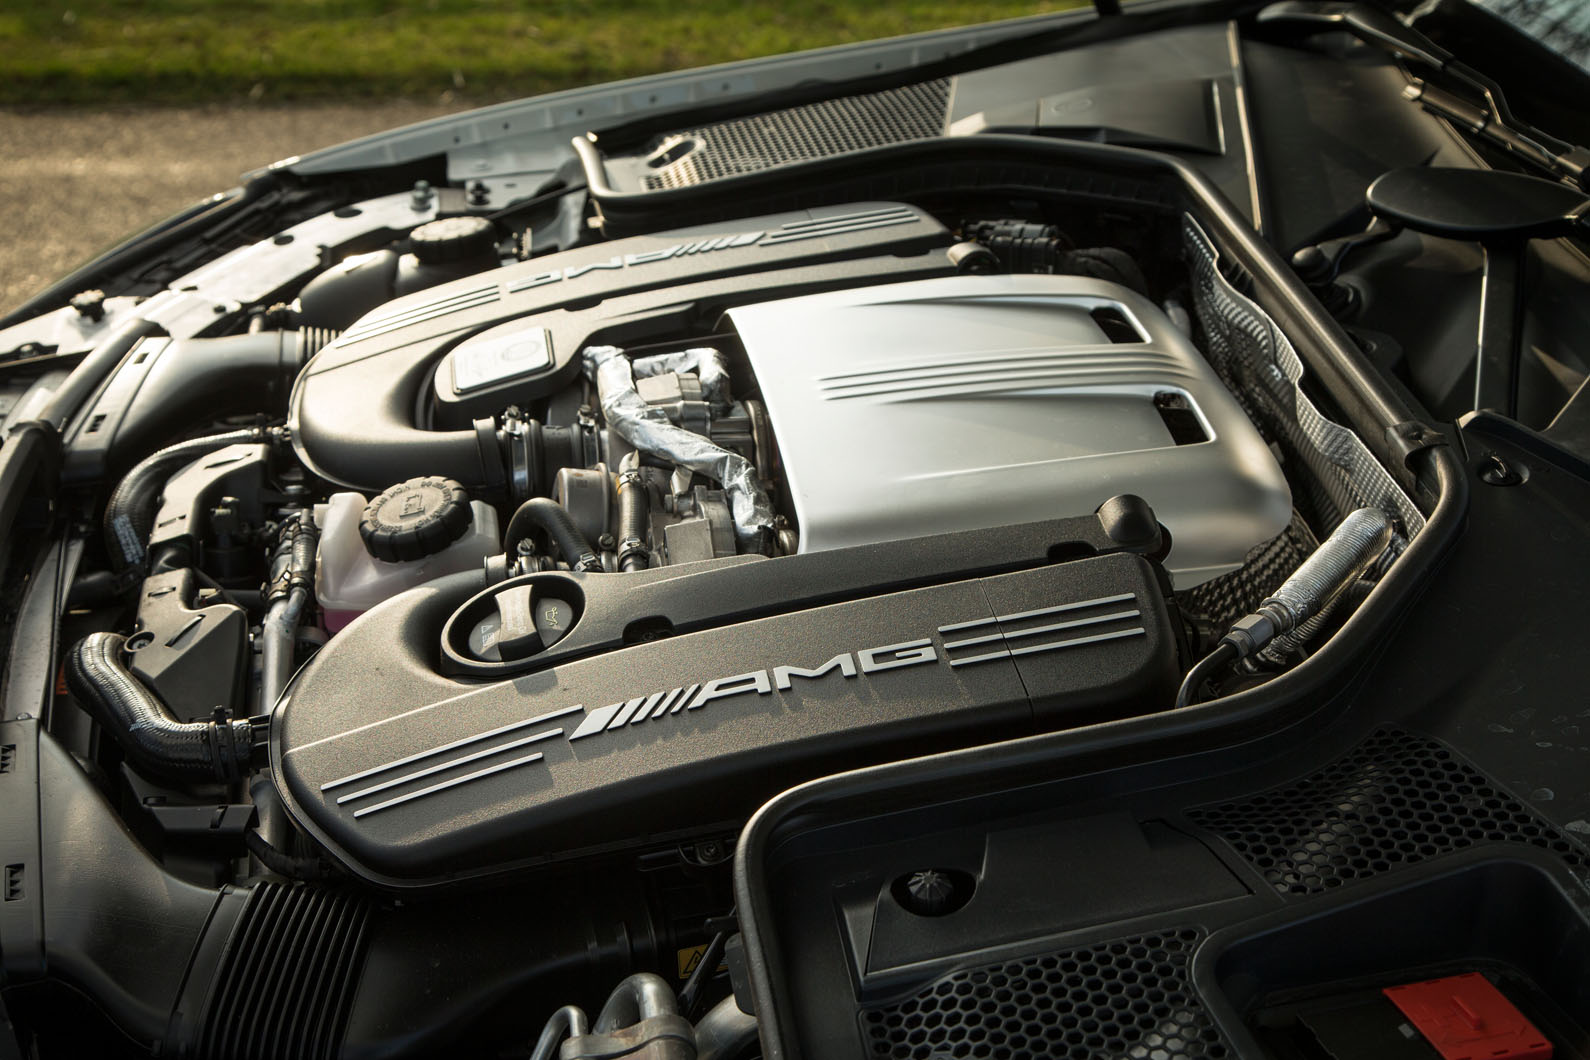 4.0-litre V8 Mercedes-AMG C 63 Cabriolet engine